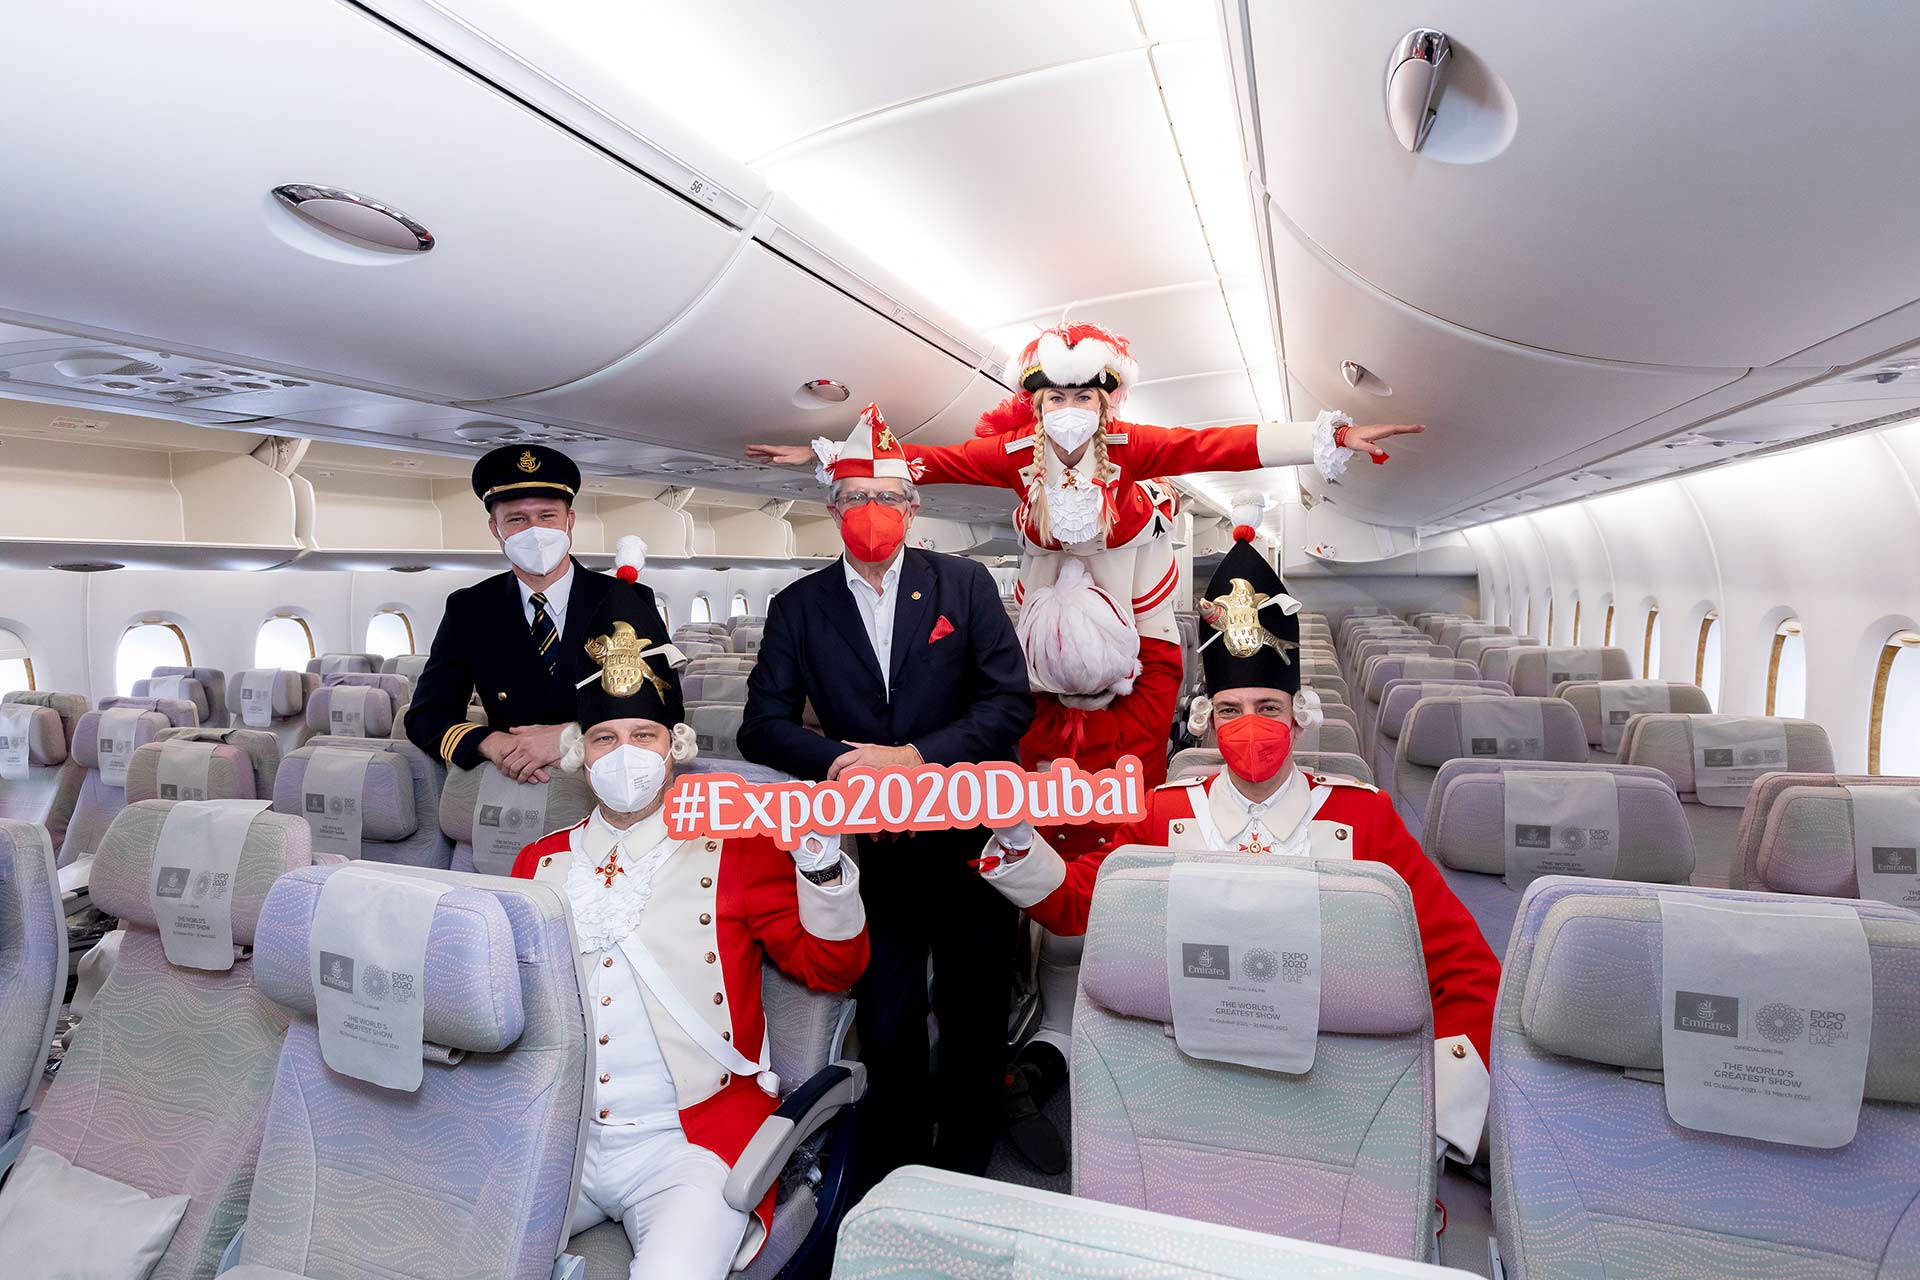 Emirates begrüßt die Roten Funken an Bord